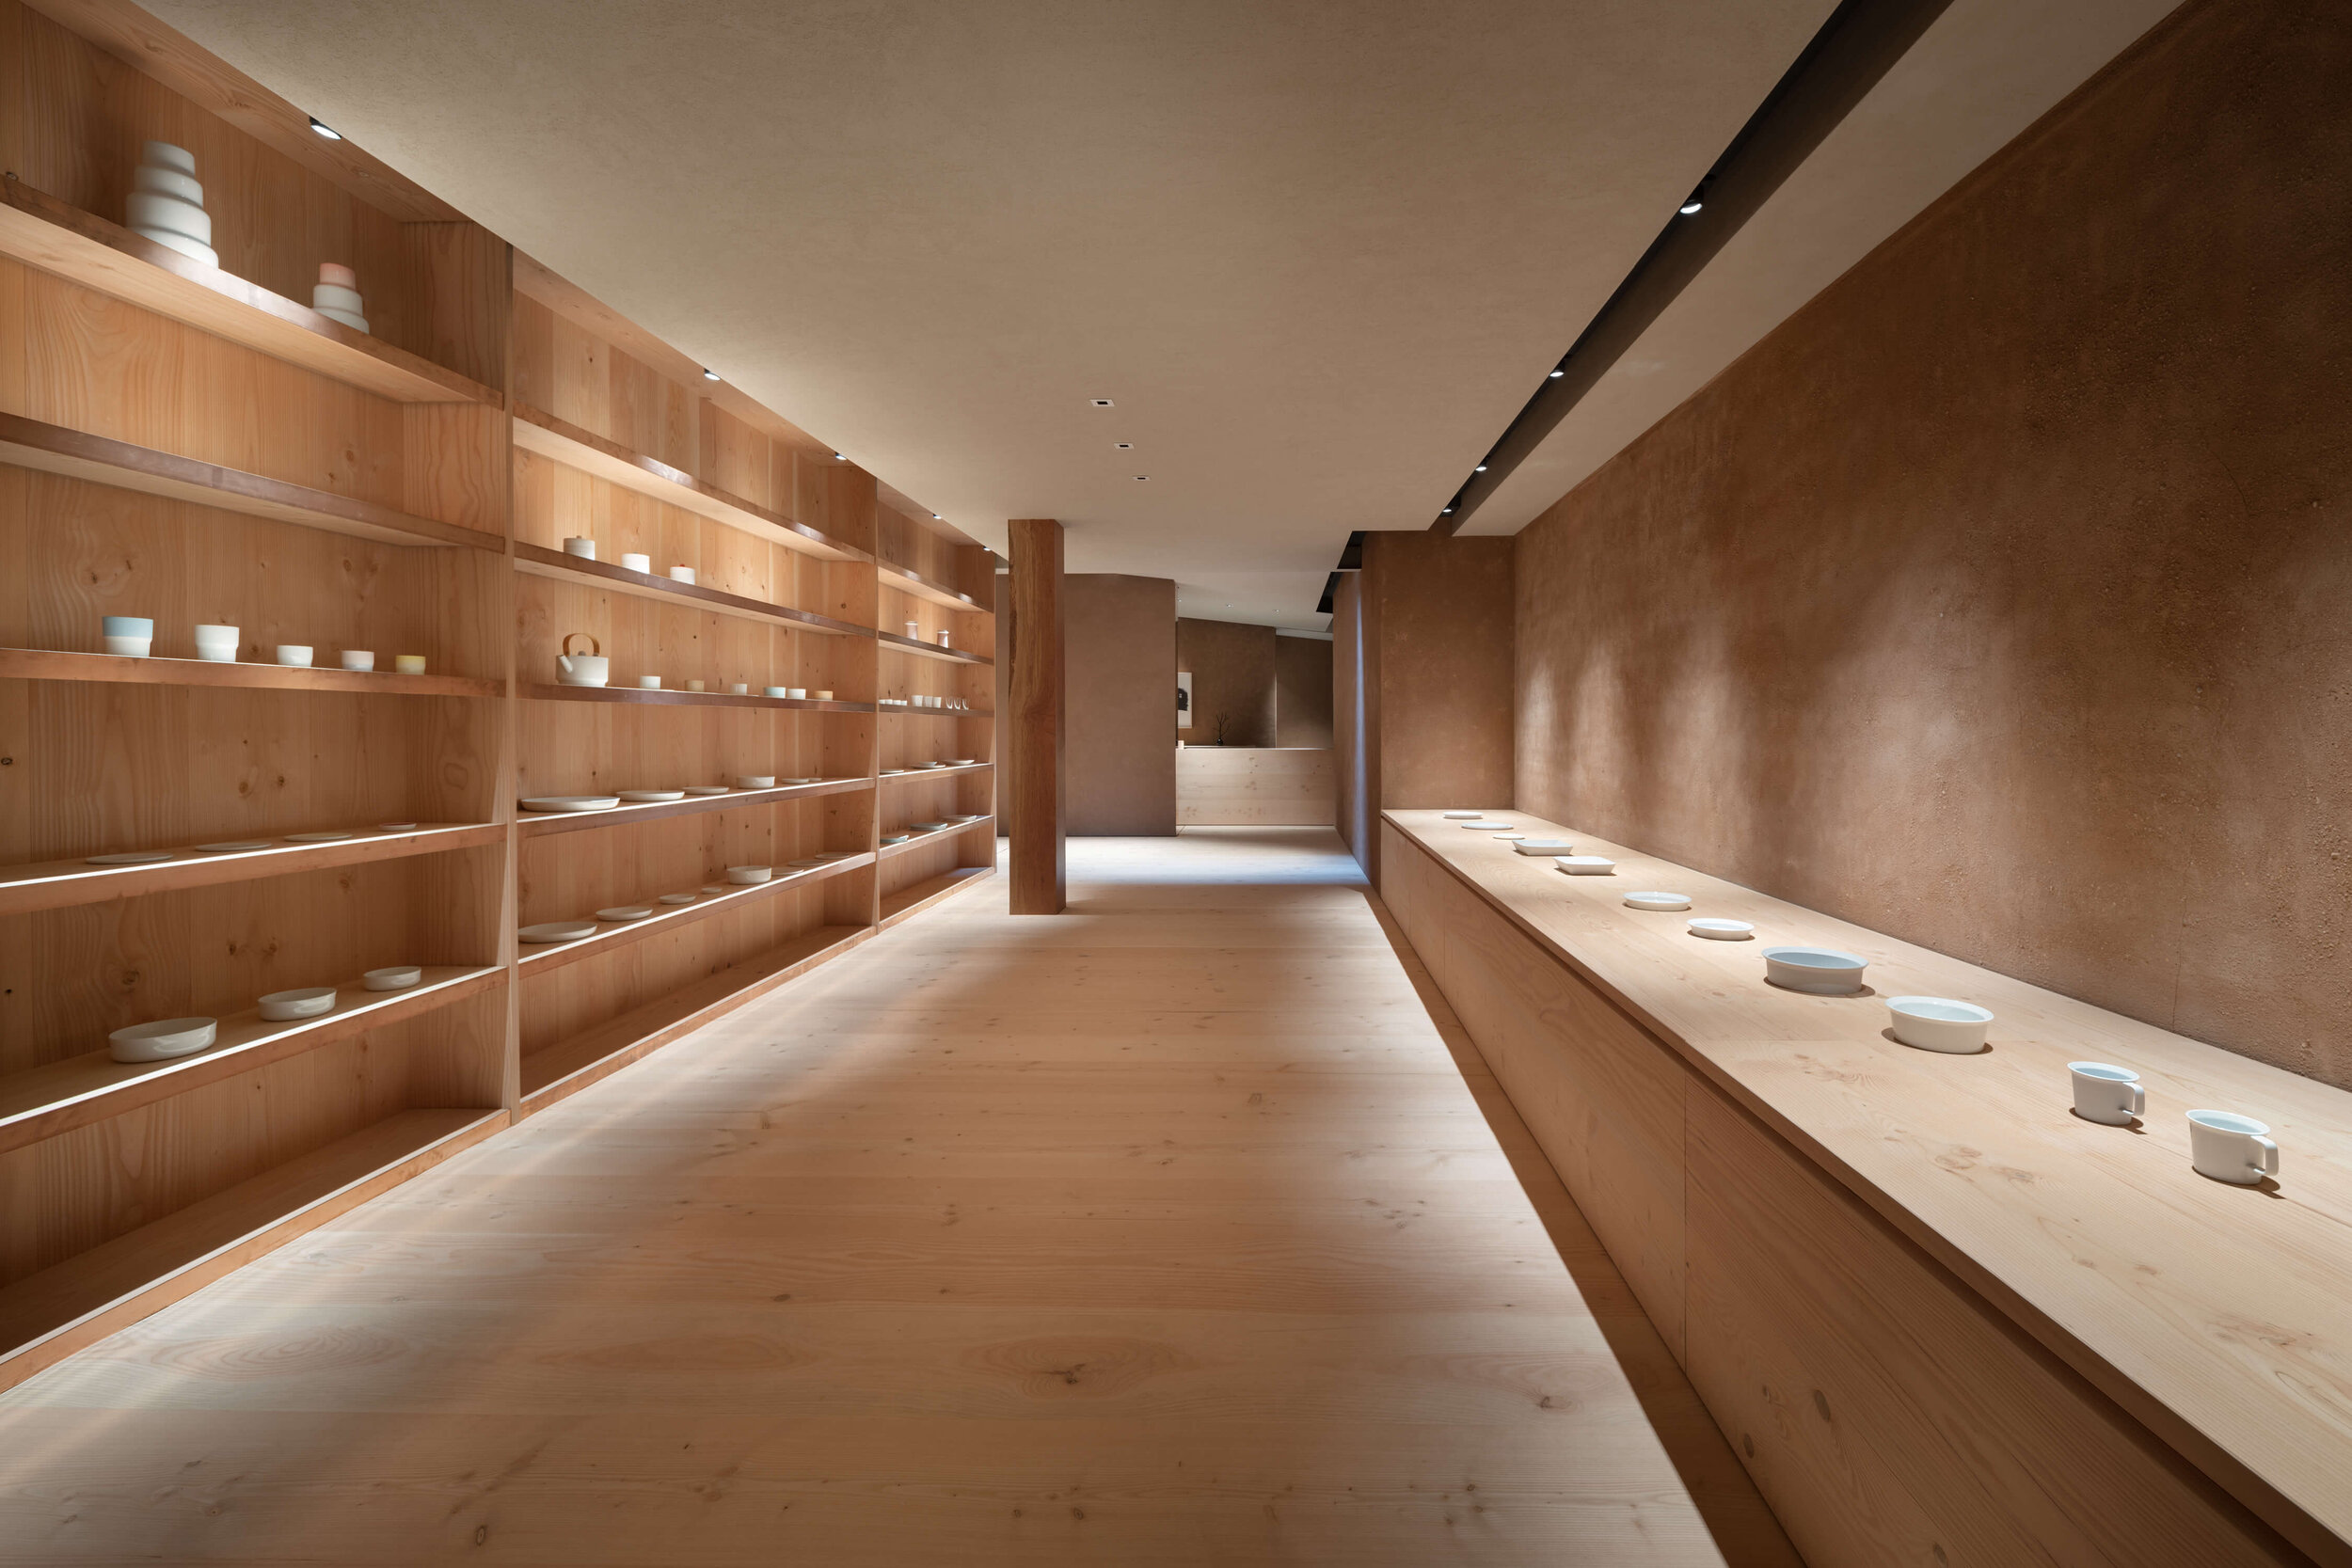  Teruhiro Yanagihara Studio has designed sophisticated interior for 1616/arita japan showroom in Arita, Japan. 